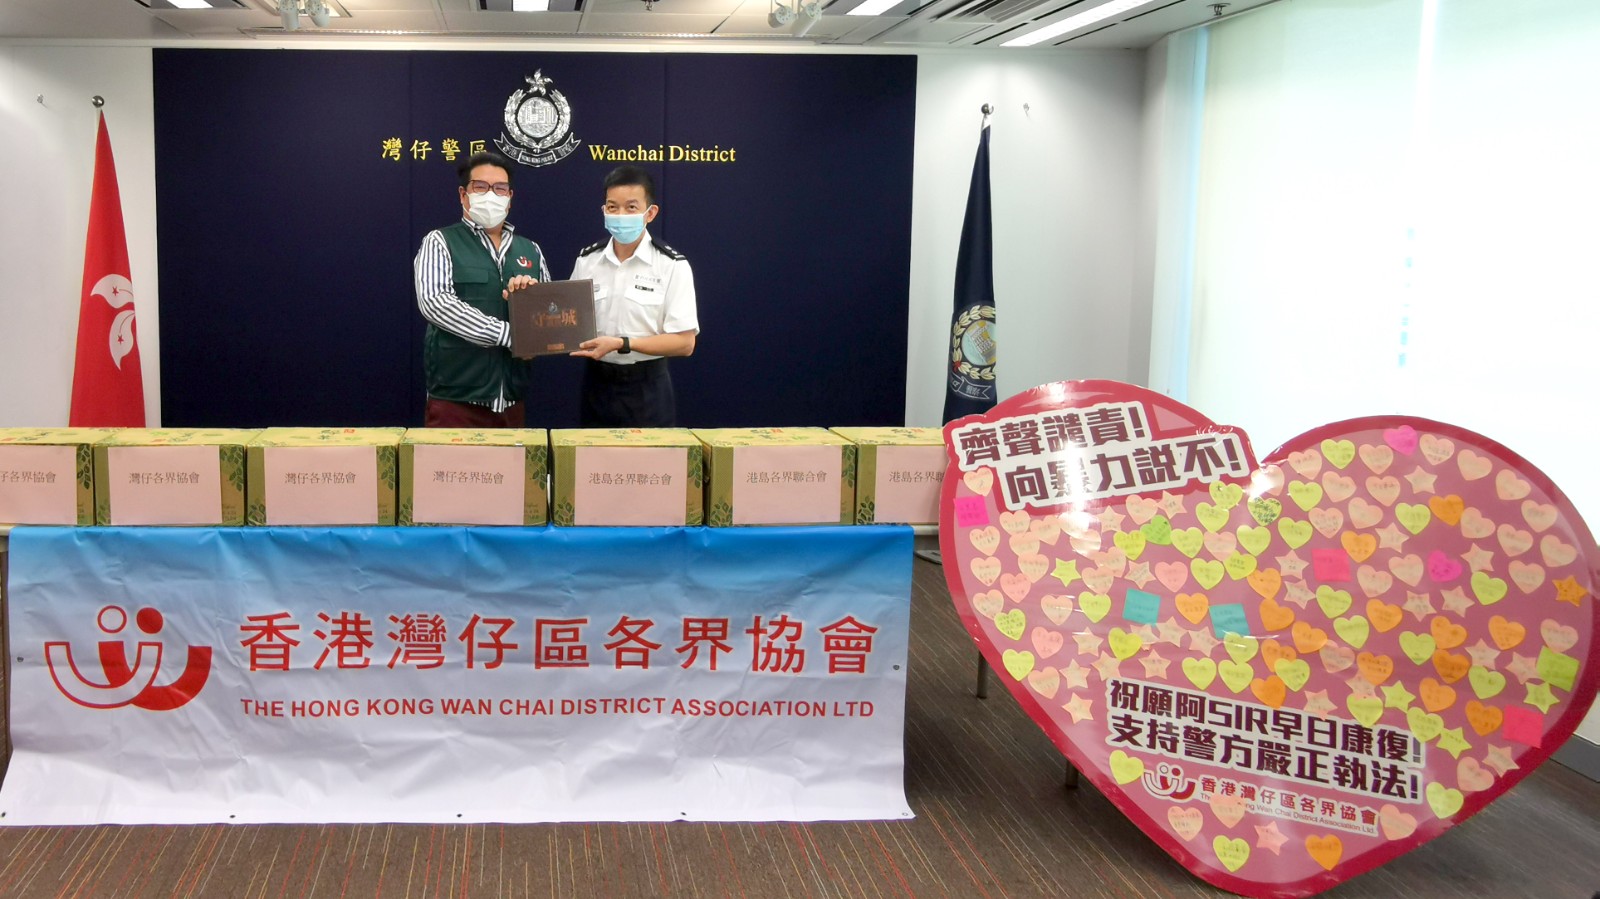 香港灣仔區各界協會前往香港警察總部慰問警員, 向警方送上愛心卡和慰問物資以示鼓勵同支持-0